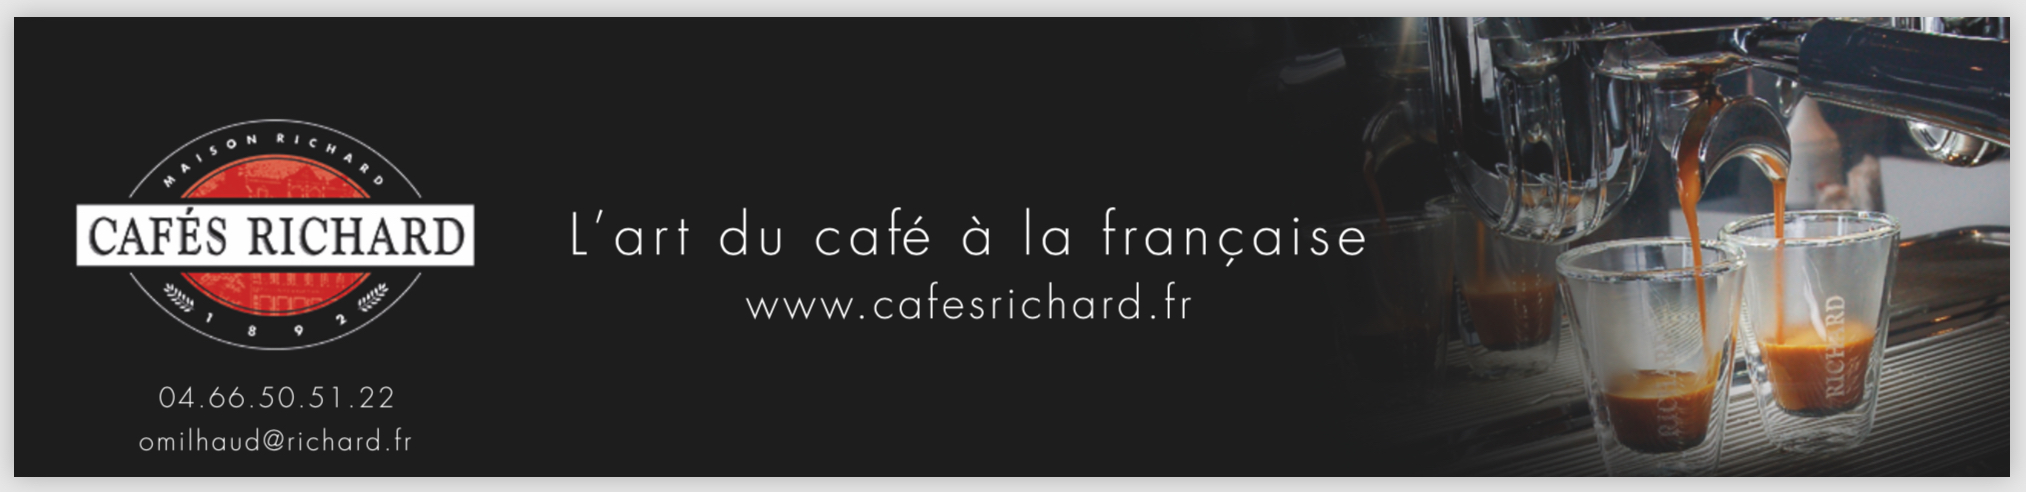 cafe richard